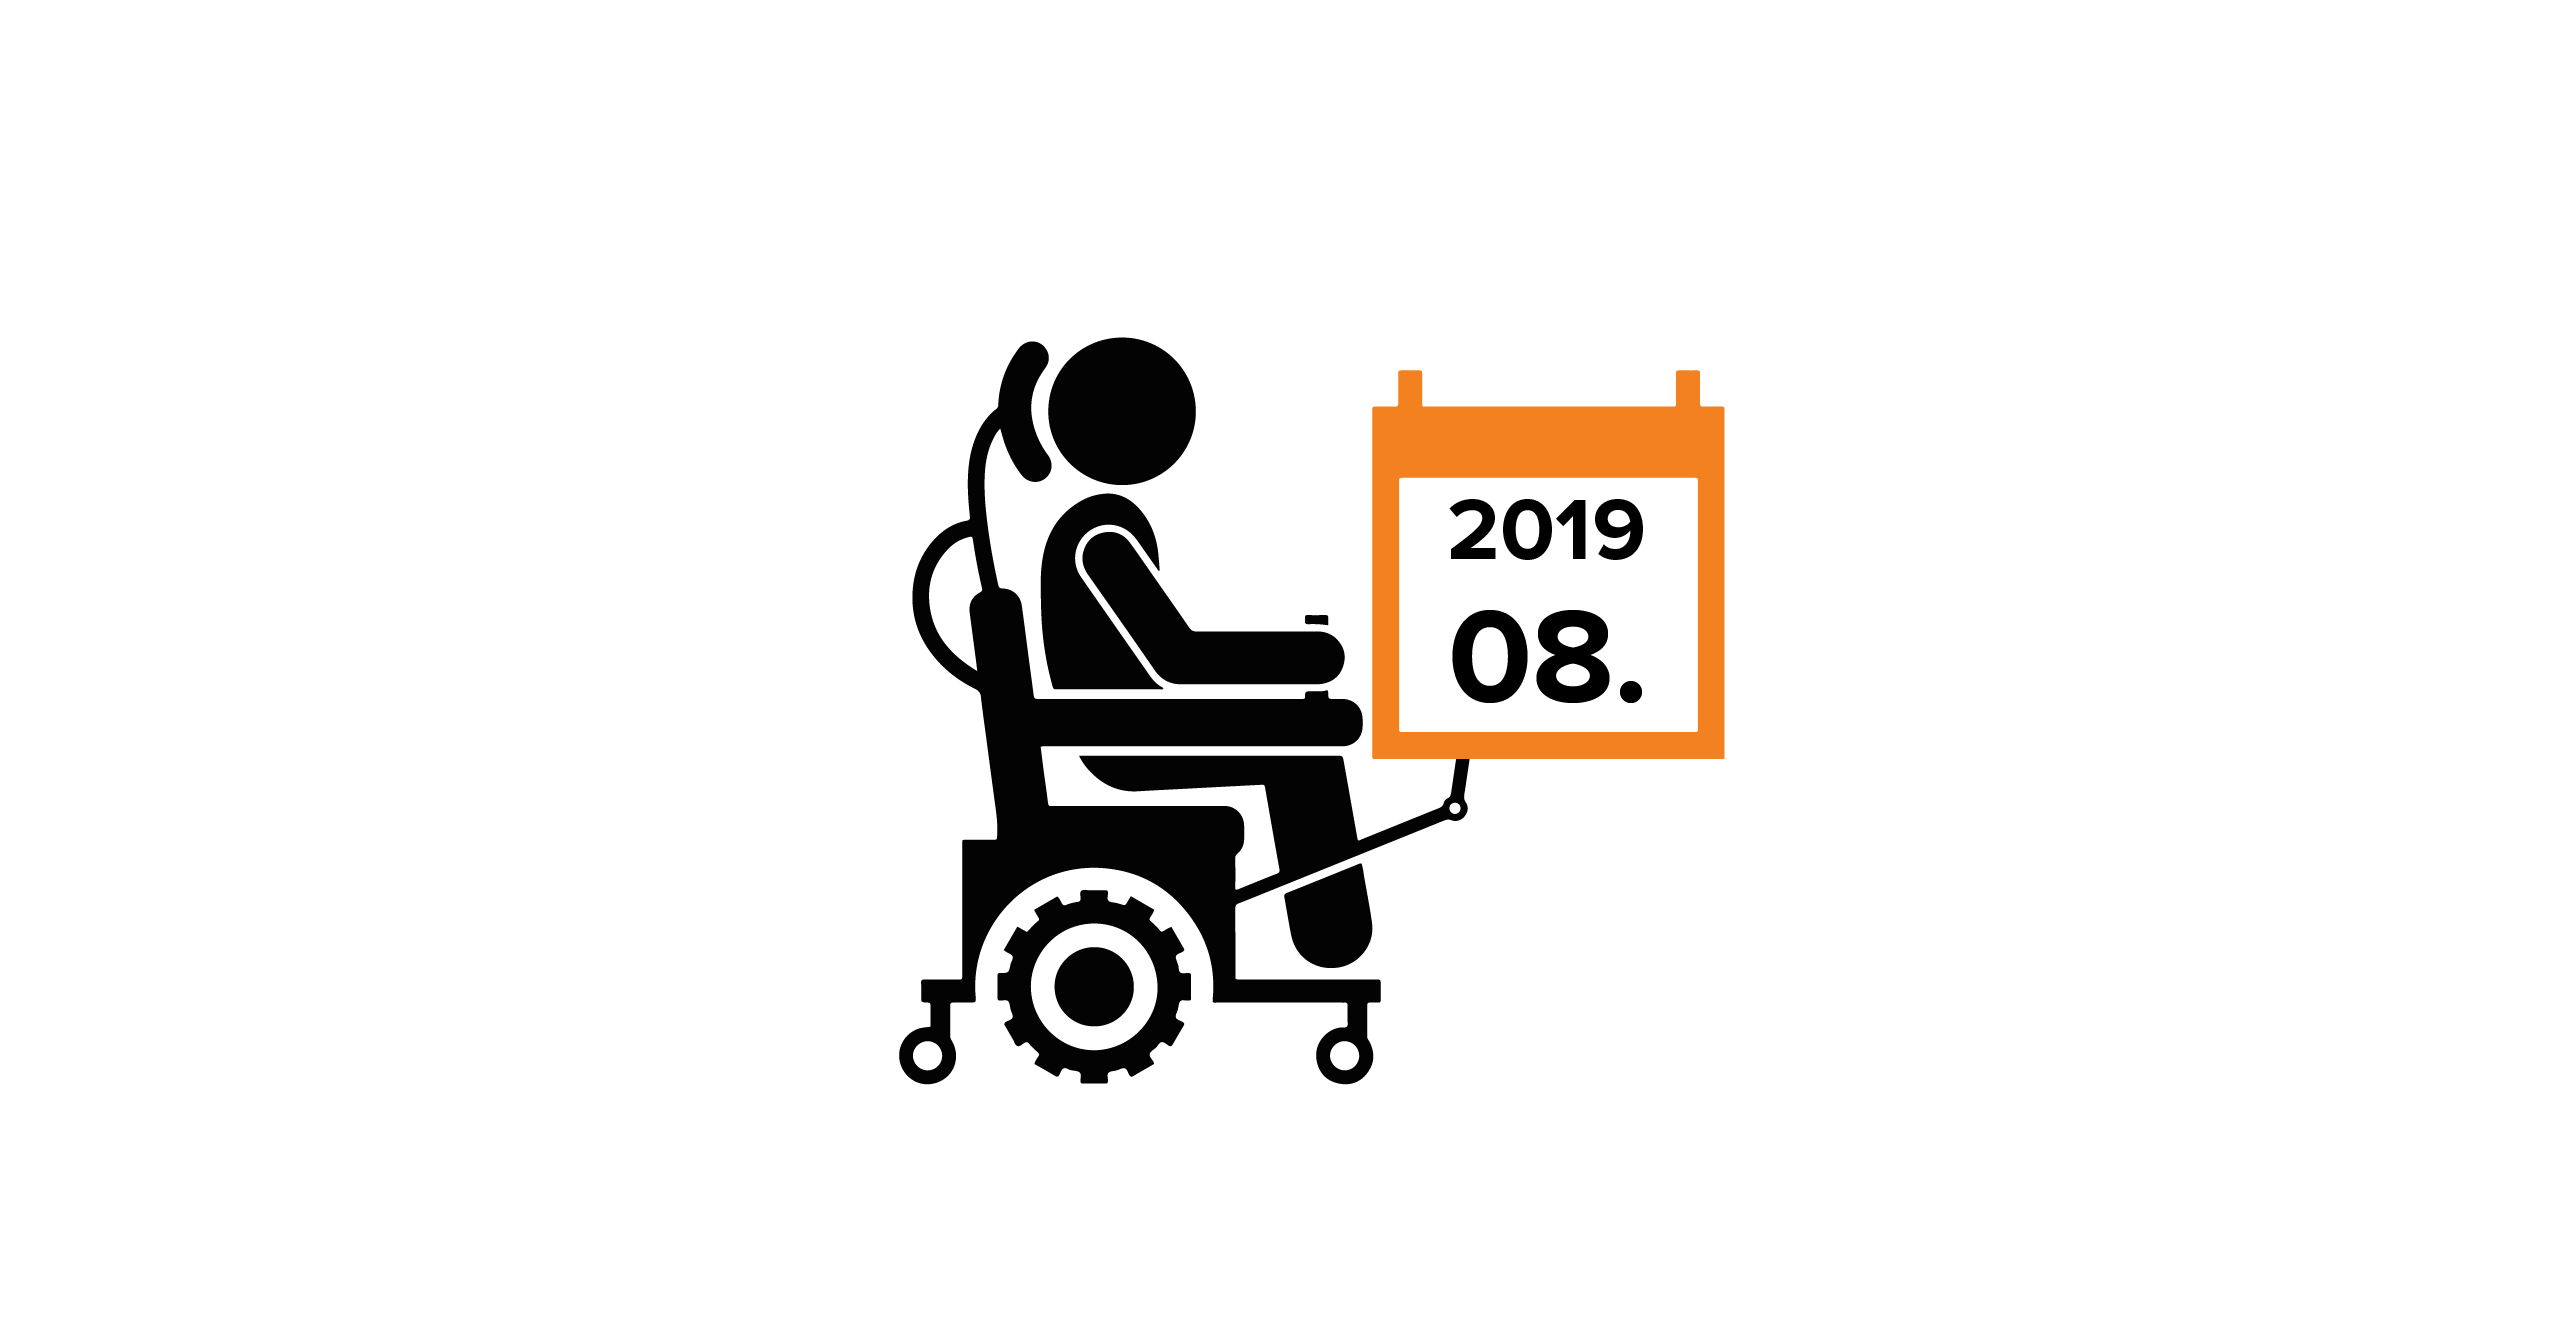 Na grafice człowiek na wózku, trzymający kalendarz z datą 08.2019